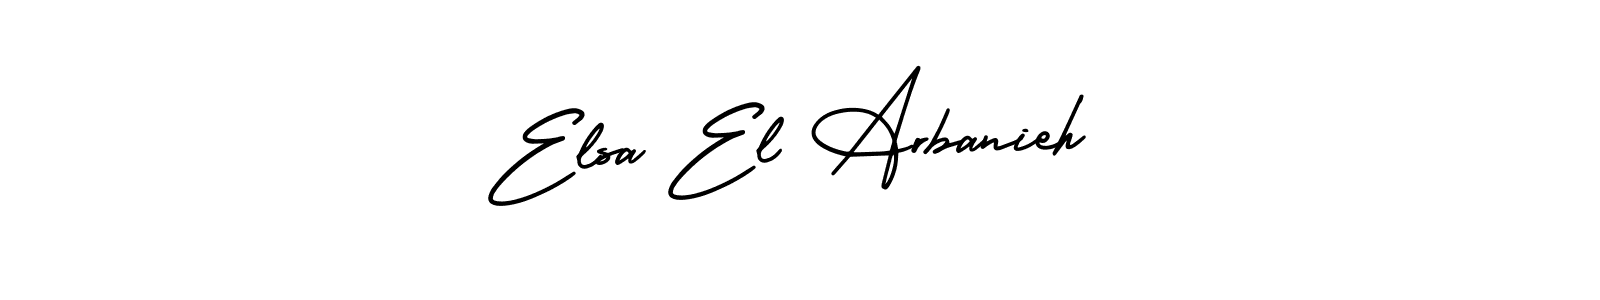 How to Draw Elsa El Arbanieh signature style? AmerikaSignatureDemo-Regular is a latest design signature styles for name Elsa El Arbanieh. Elsa El Arbanieh signature style 3 images and pictures png